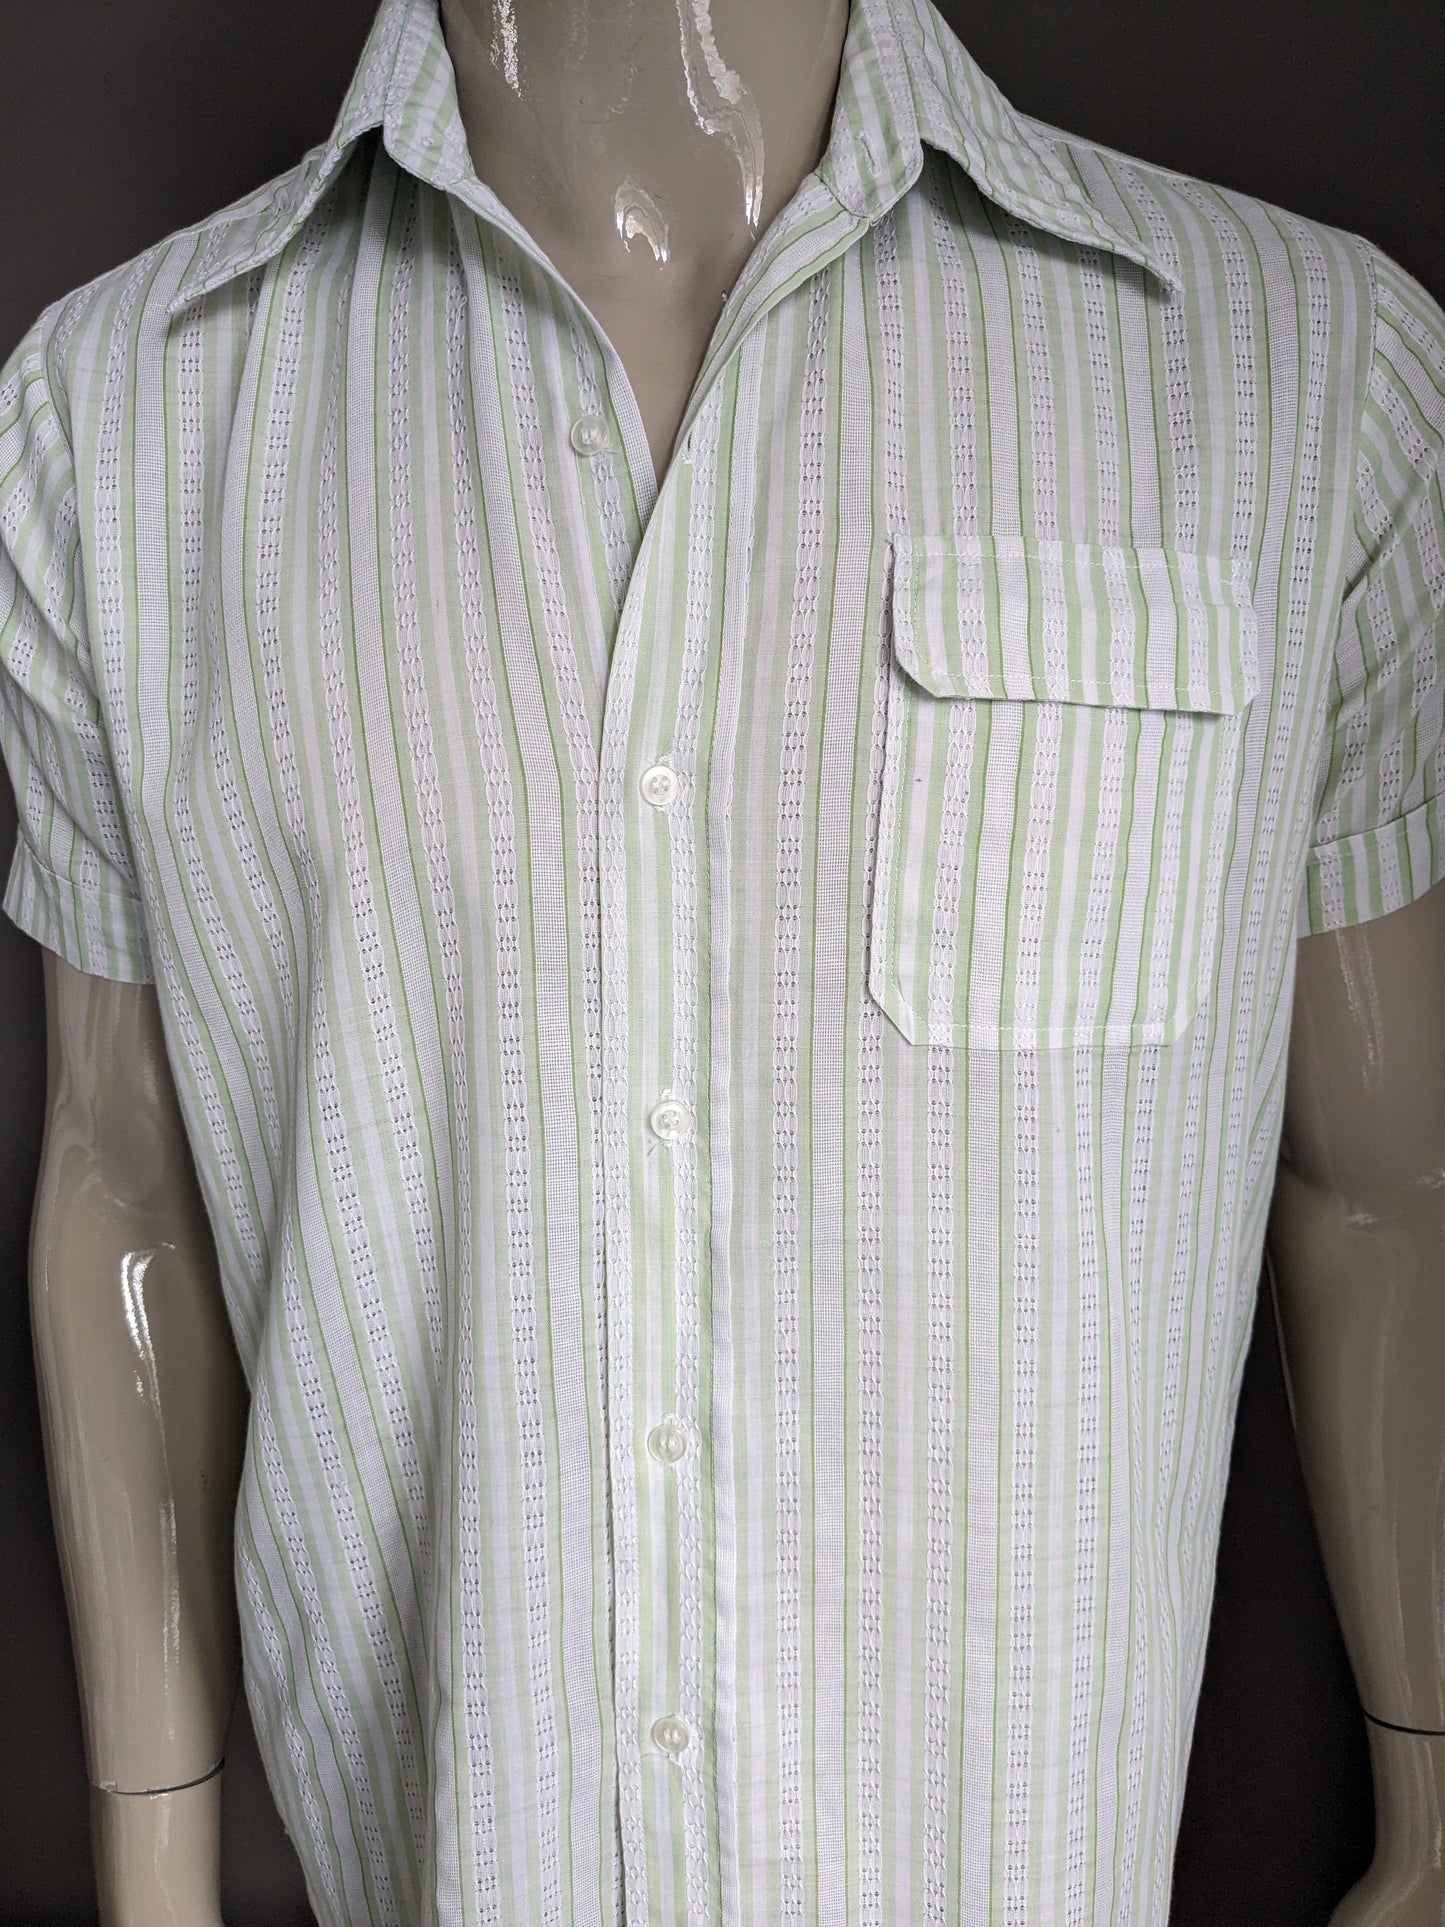 Camisa de amistad vintage manga corta con cuello puntiagudo. Motín de rayas blancas verdes. Talla L.